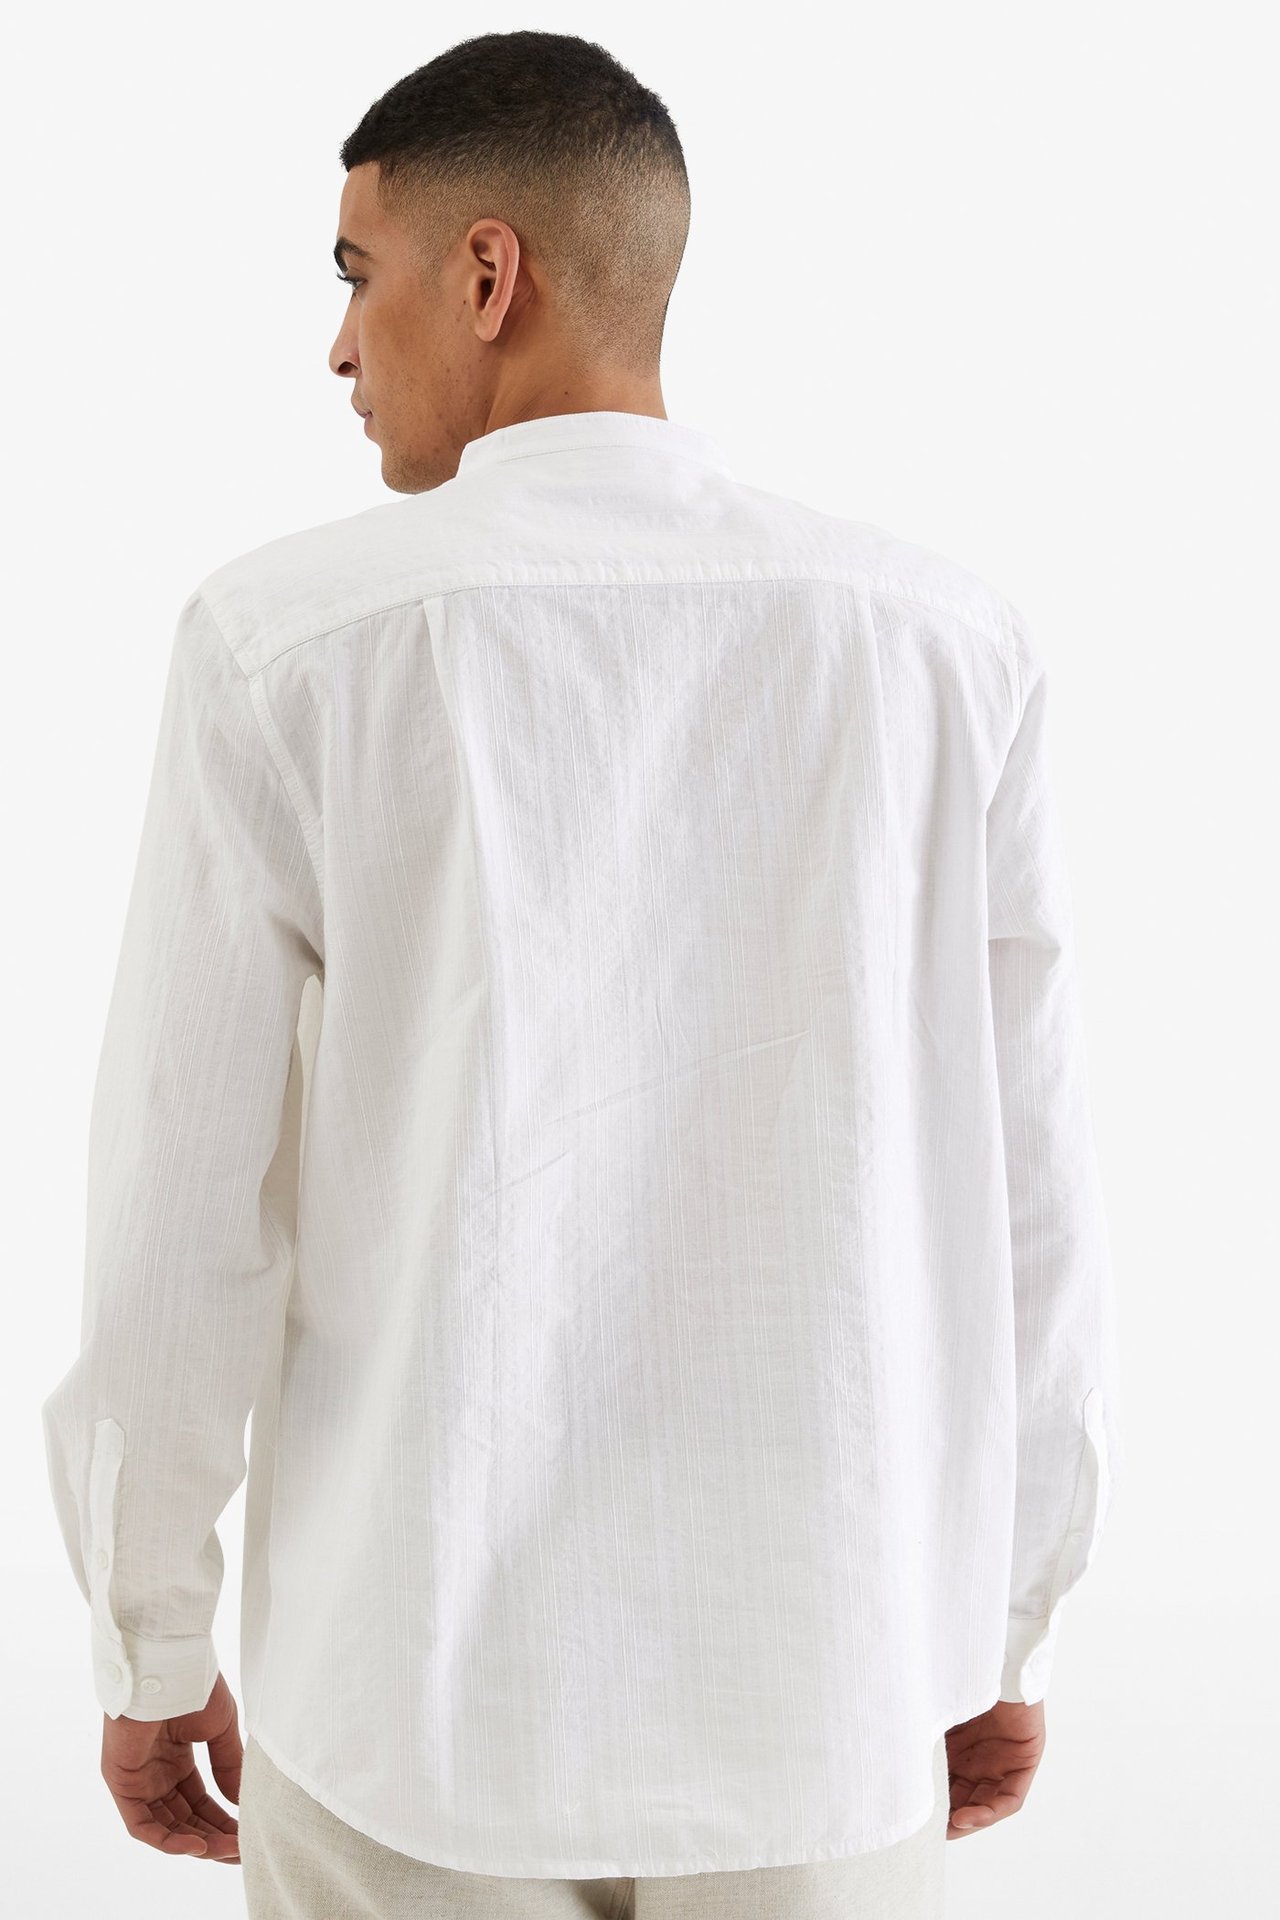 Skjorte med murerkrage Hvit - null - 3